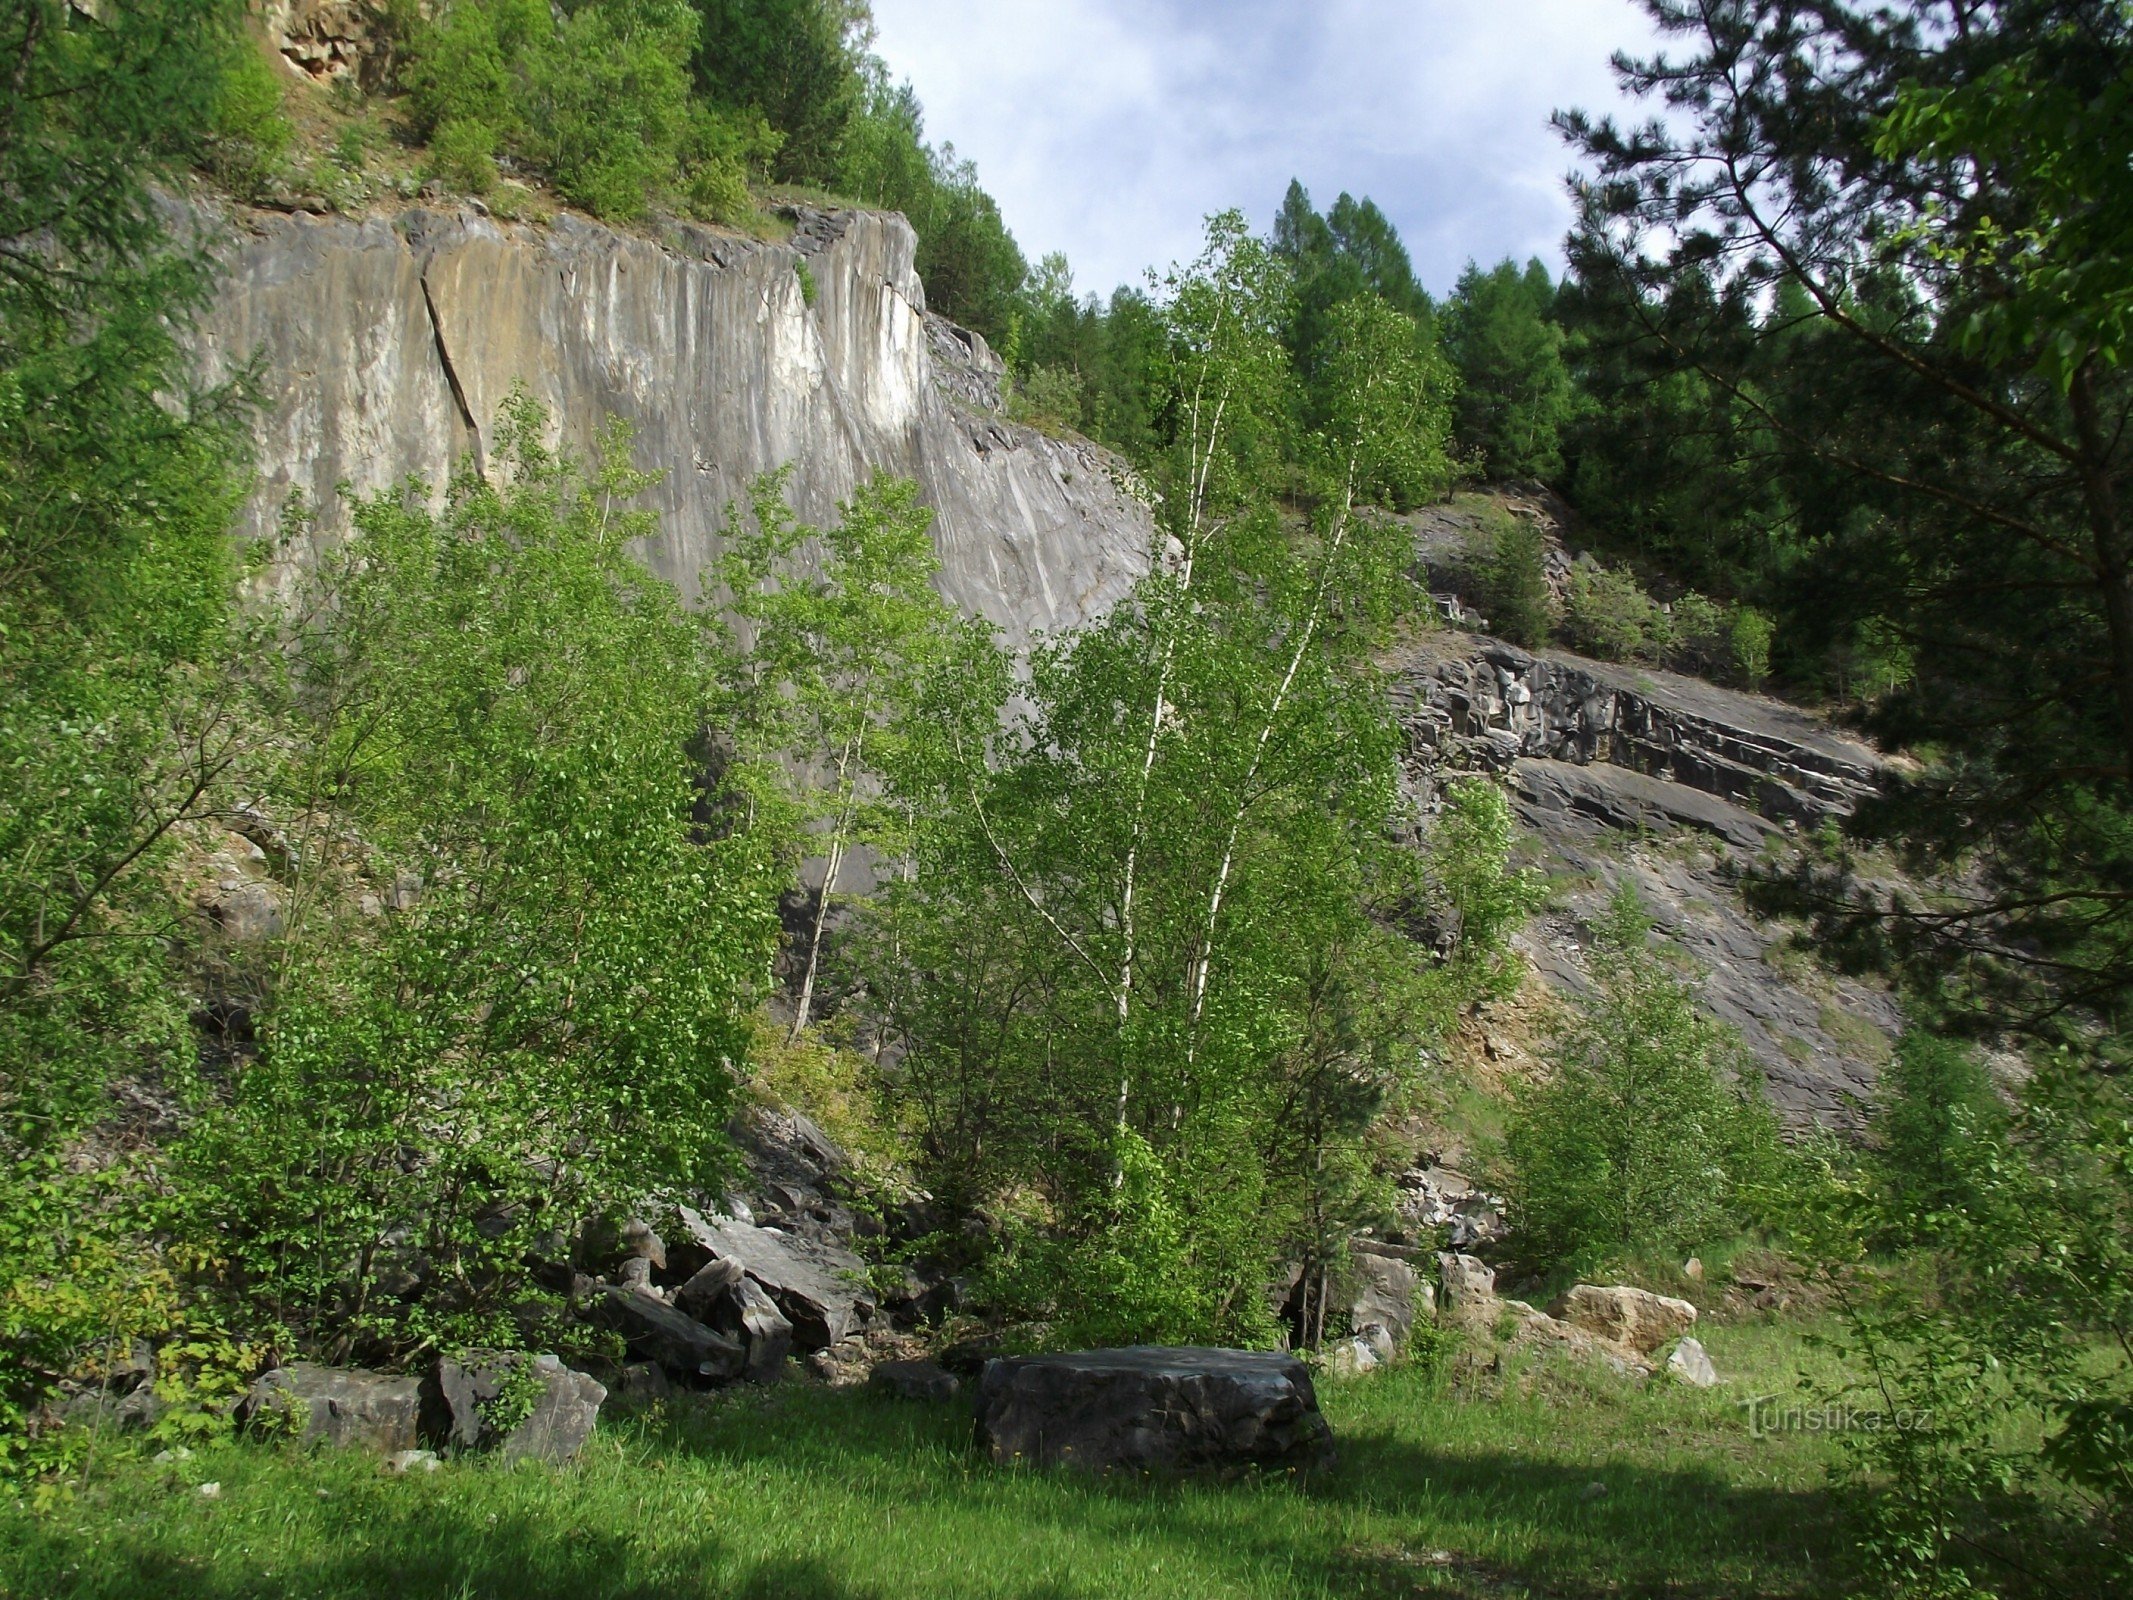 Bohdíkovské skály 2 or the hockey road to the limestone quarry